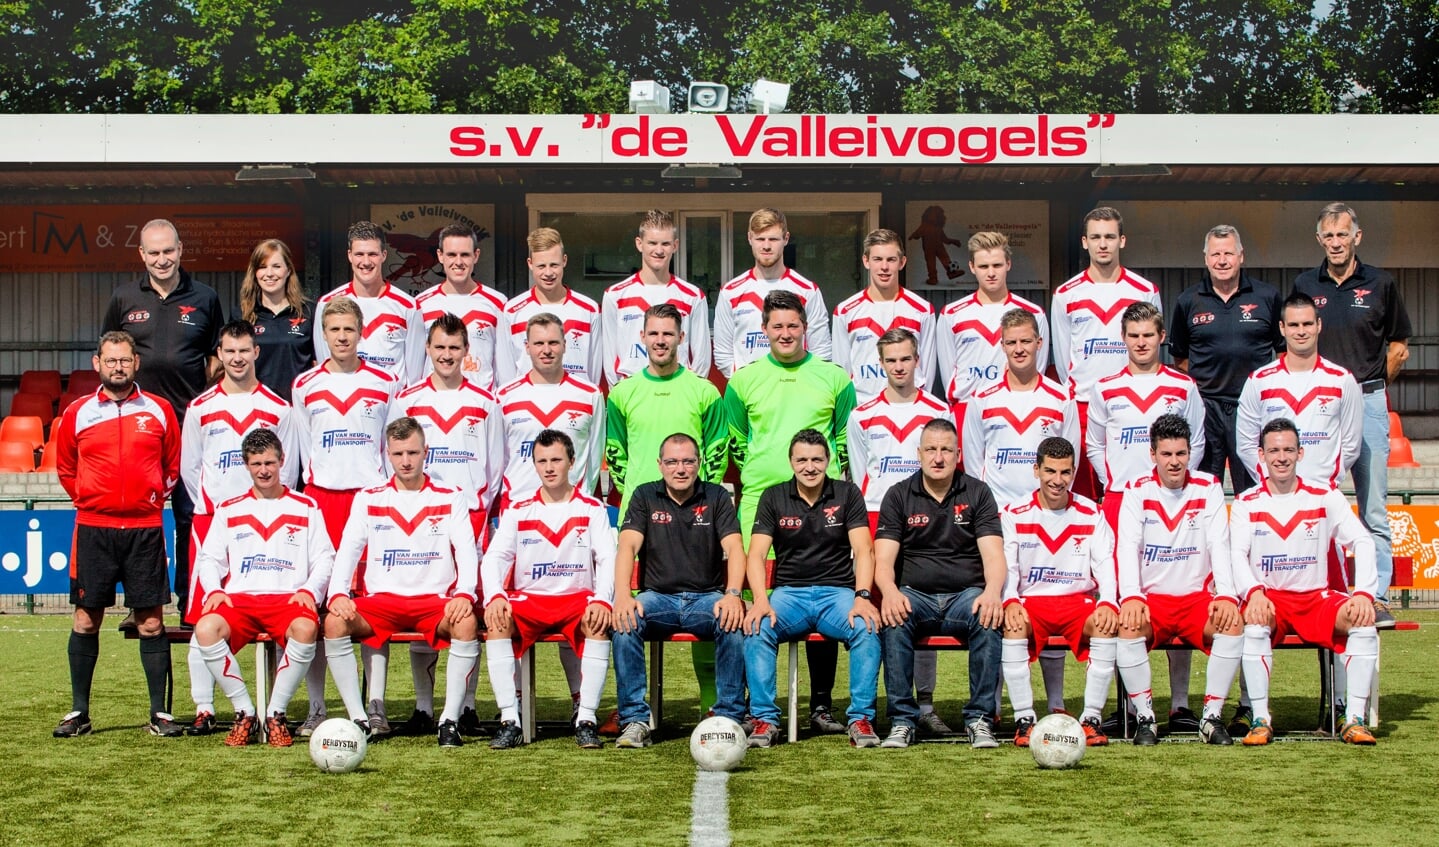 Teamfoto van Valleivogels uit het seizoen 2015/2016 met de achterste rij uiterst links Bert van den Broek en Robert van den Broek op de middelste rij, vijfde van links.